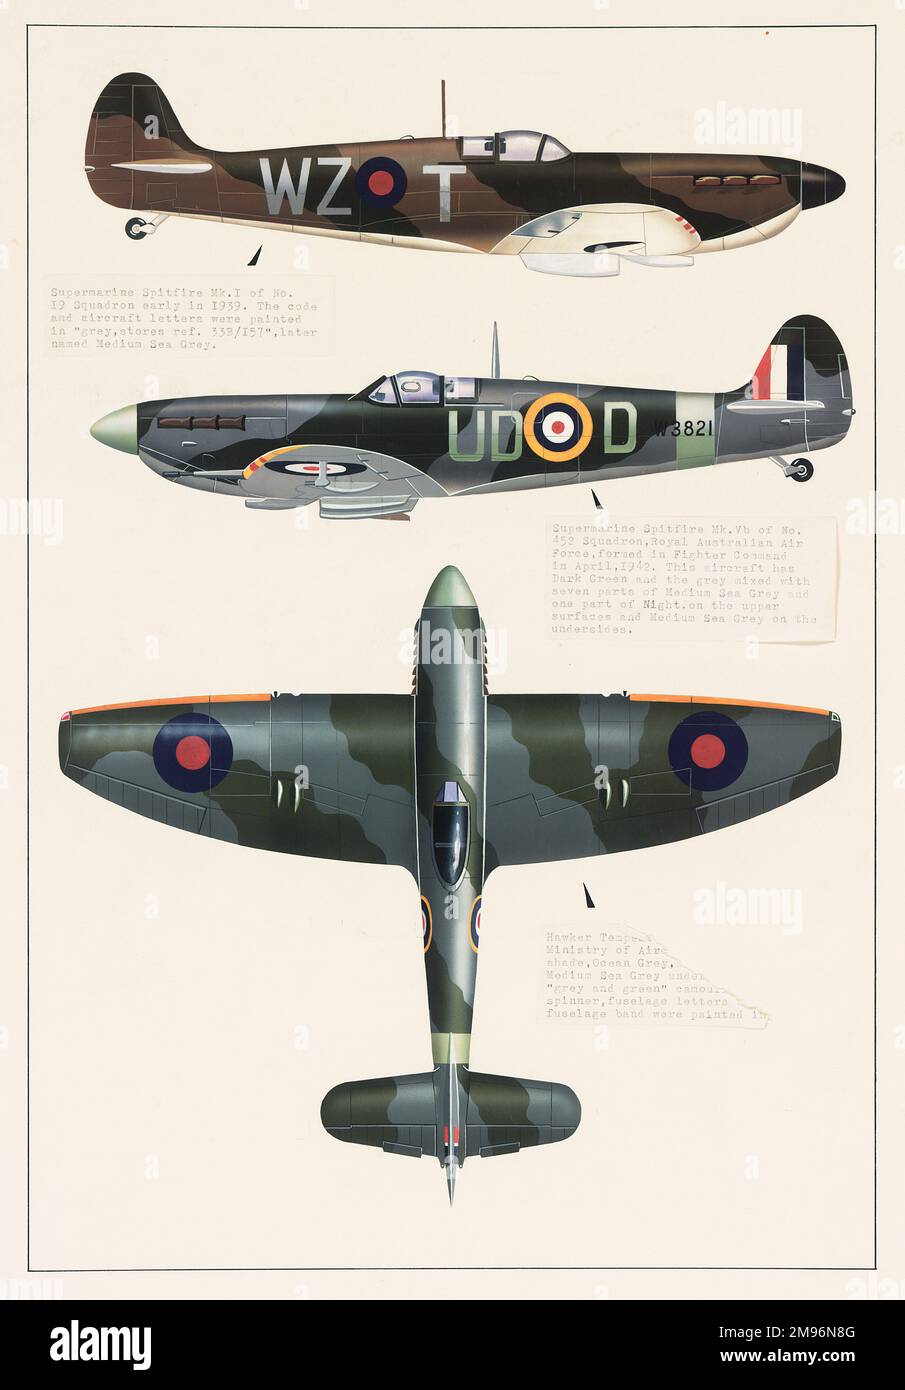 Spitfire Mk. Supermarine 1, Supermarine Spitfire Mk.Vb, et Hawker Tempest avions, tous dans la peinture de camouflage. Banque D'Images